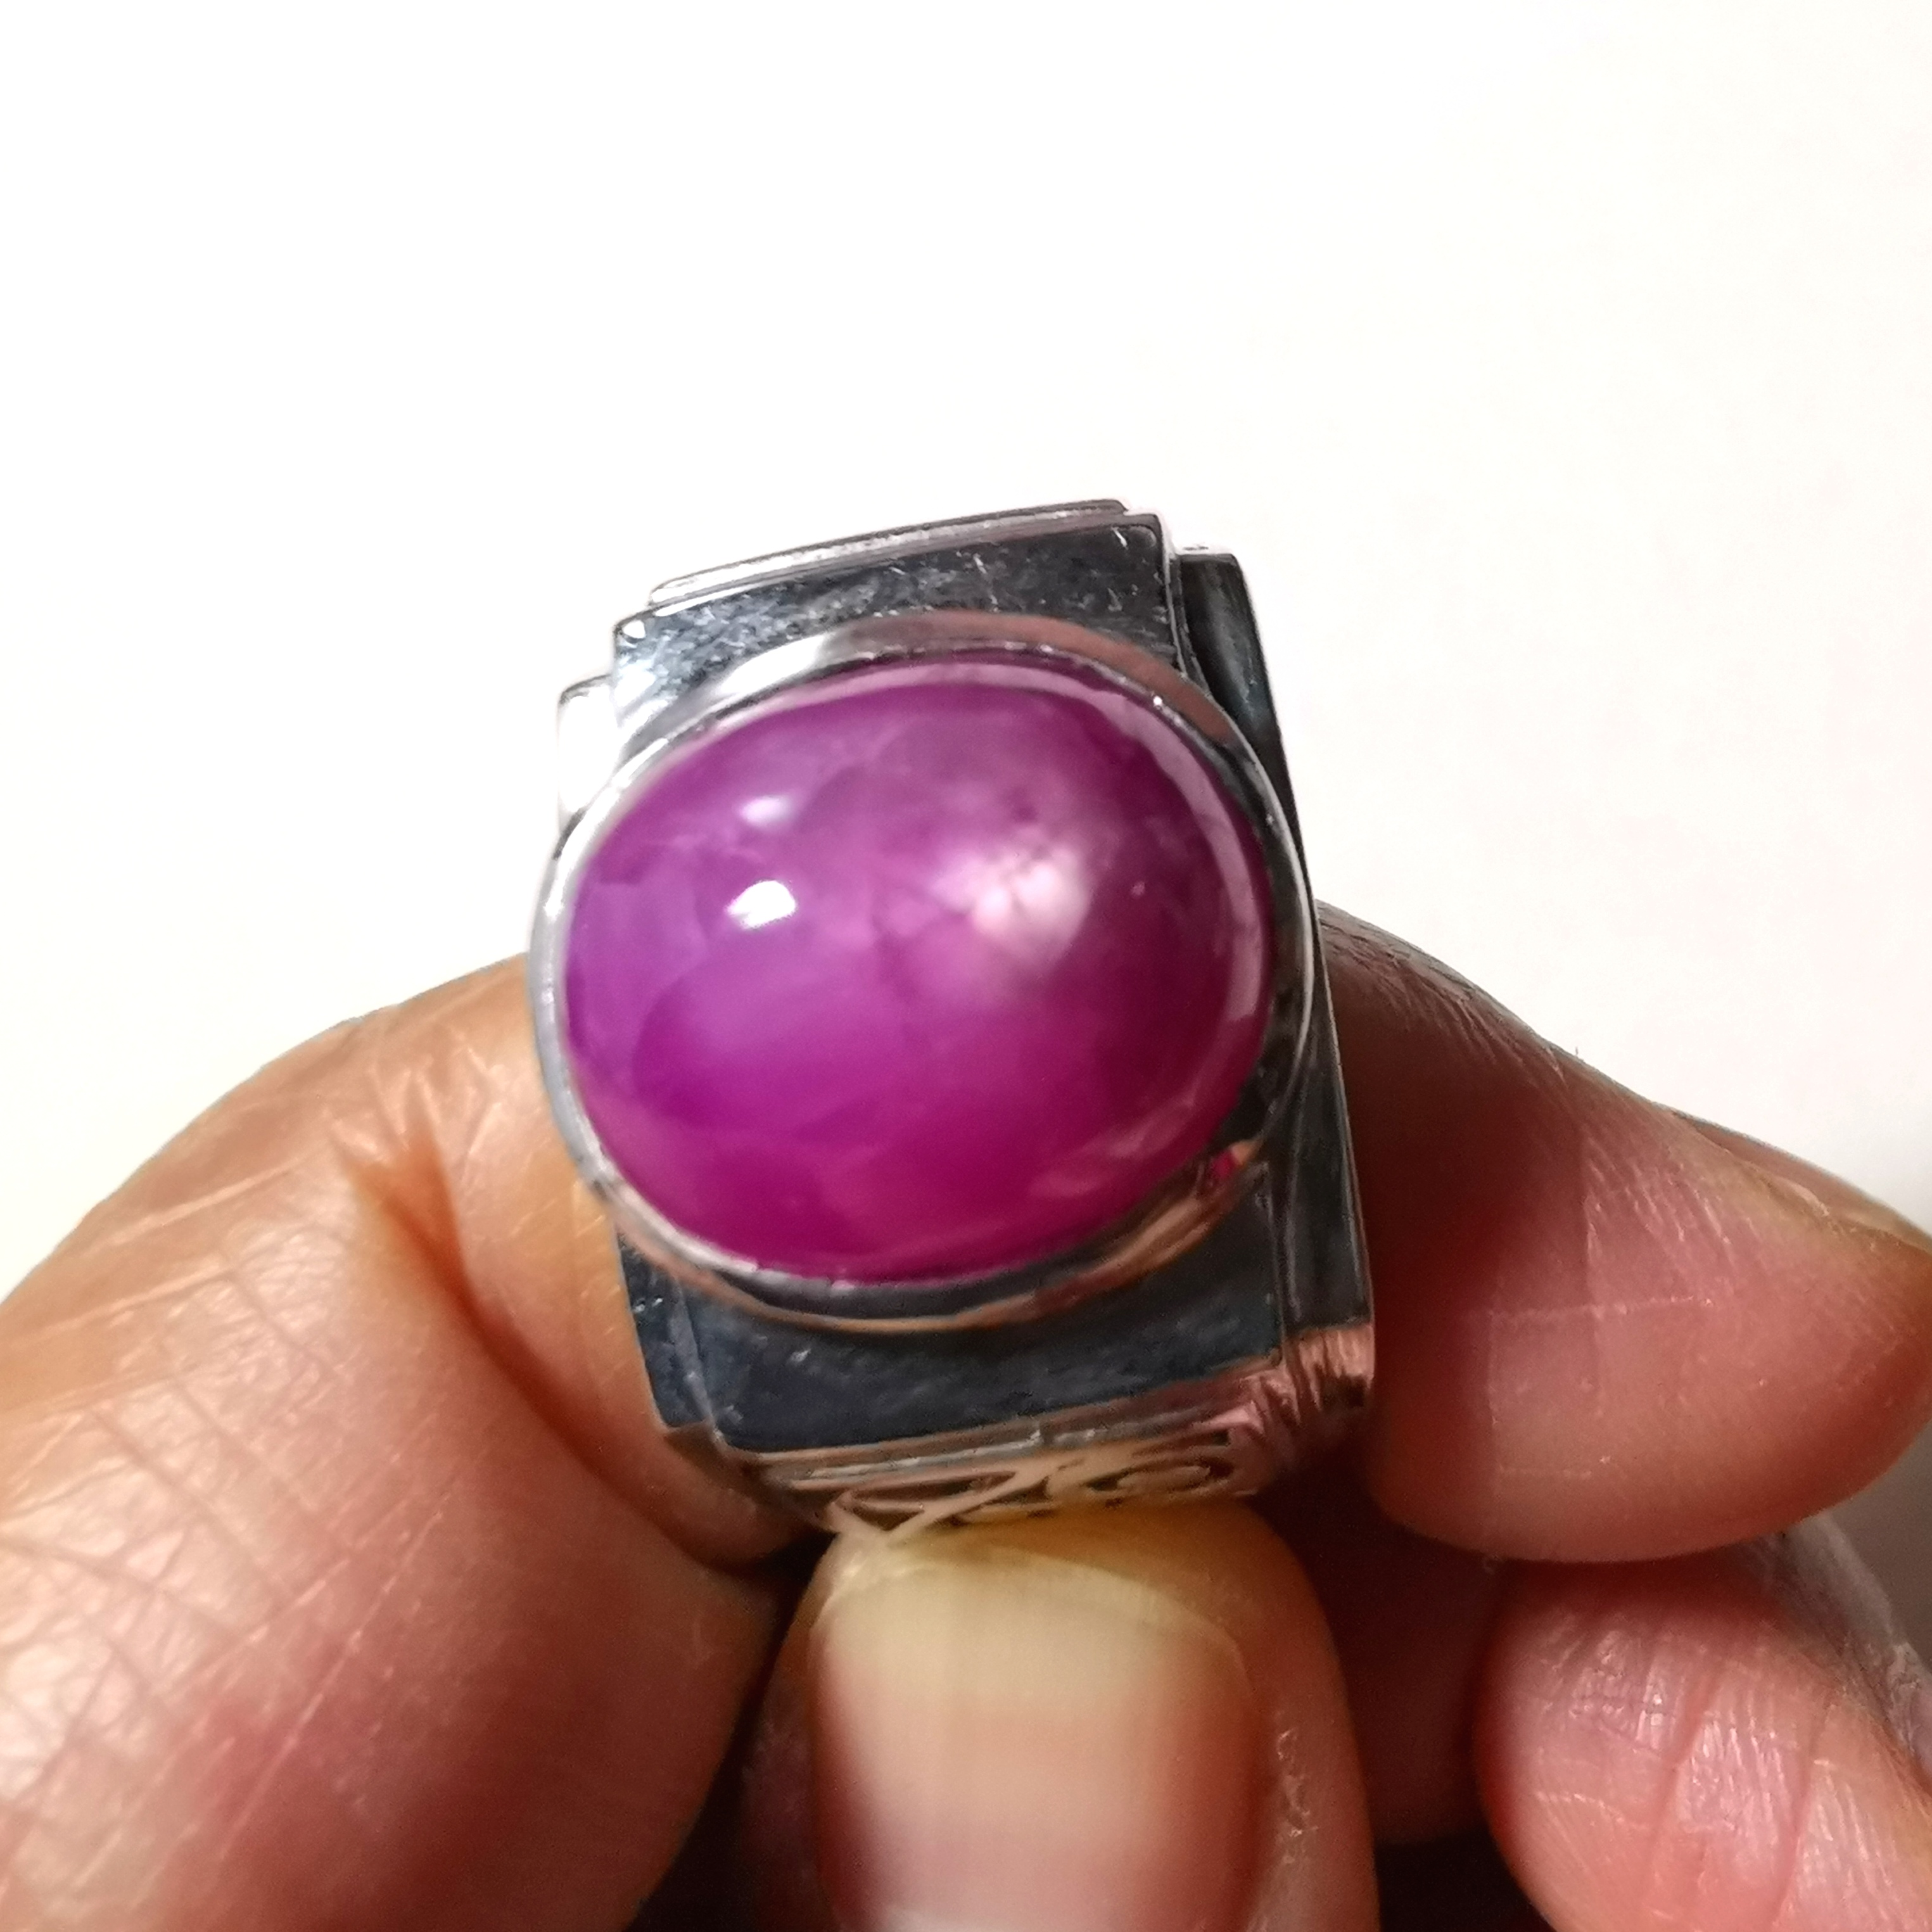 แหวนผู้ชาย ทับทิมแท้ 18 กะรัต สีชมพูเข้มอมแดง เรือนเงินแท้ ฉลุลายด้านข้าง ไซส์ 56.5